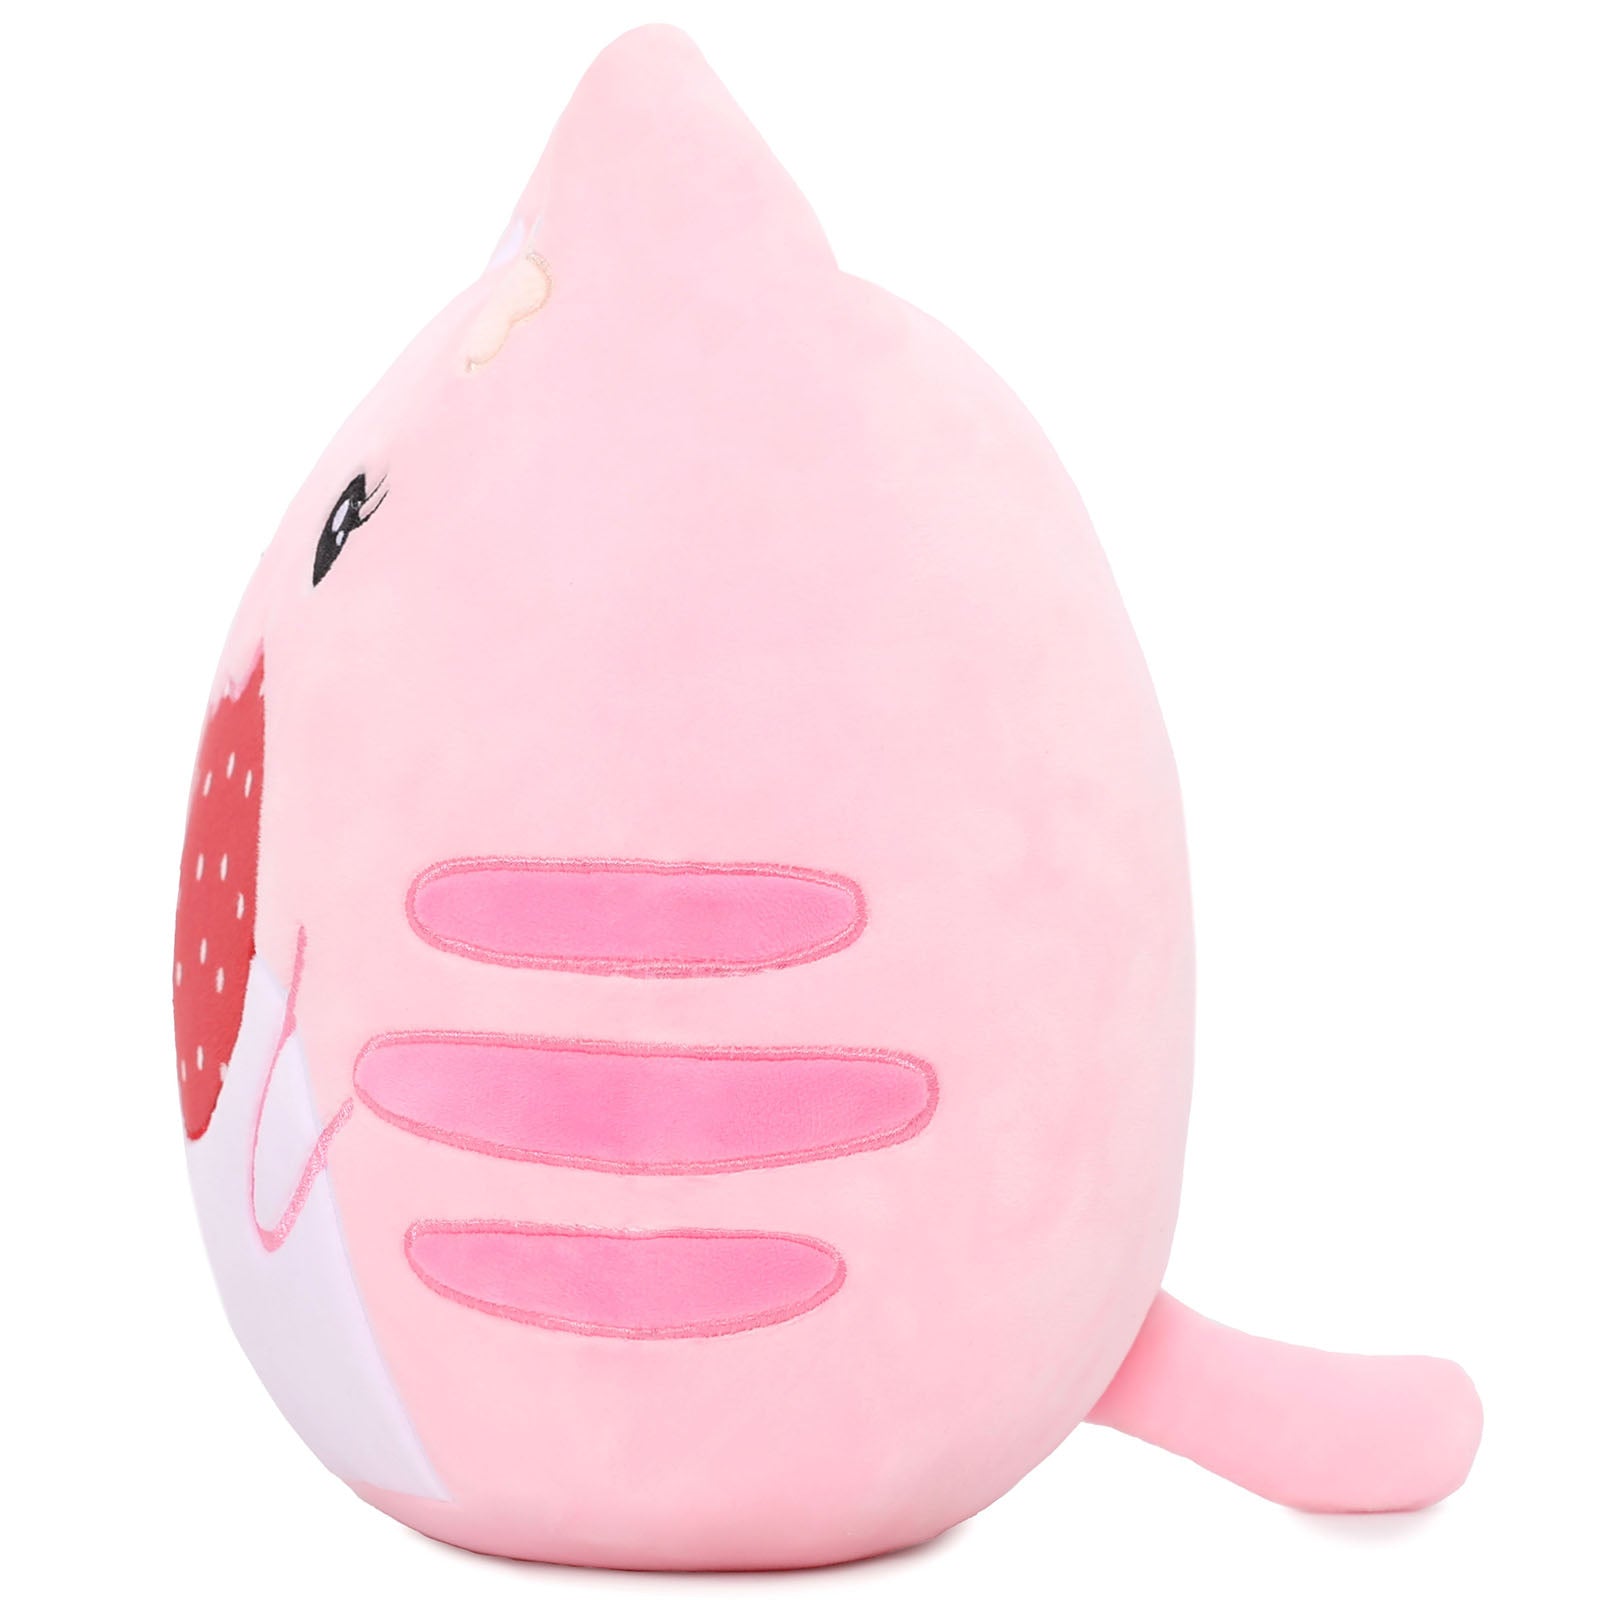 Kawaii Cat Throw Pillow, Pink/Orange, 12 Inches